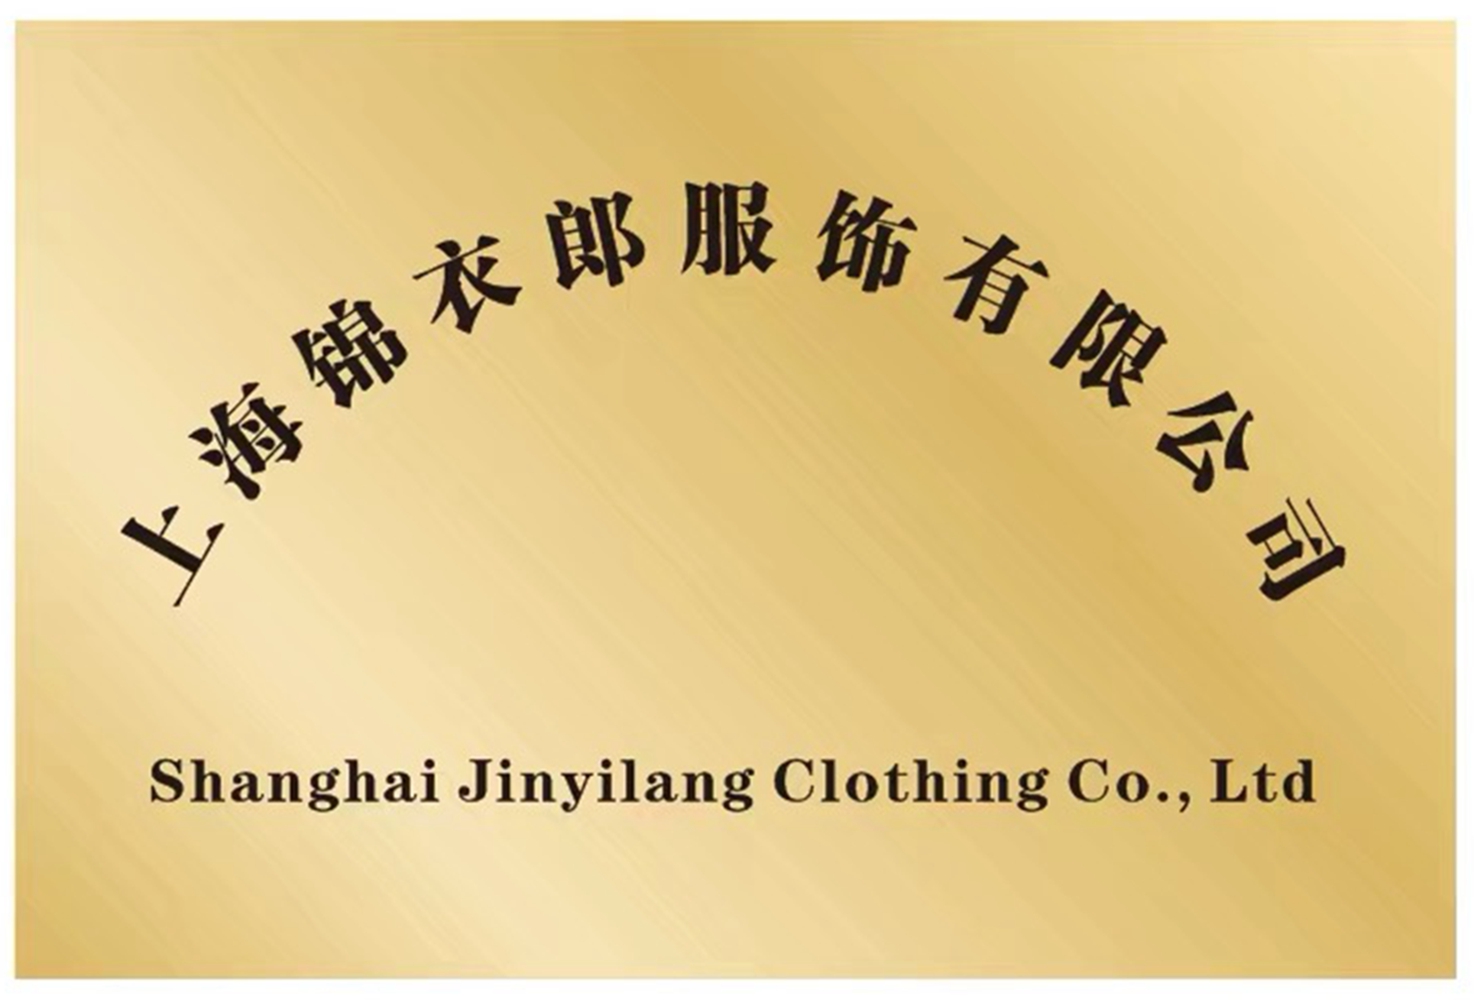 上海錦衣郎服飾有限公司